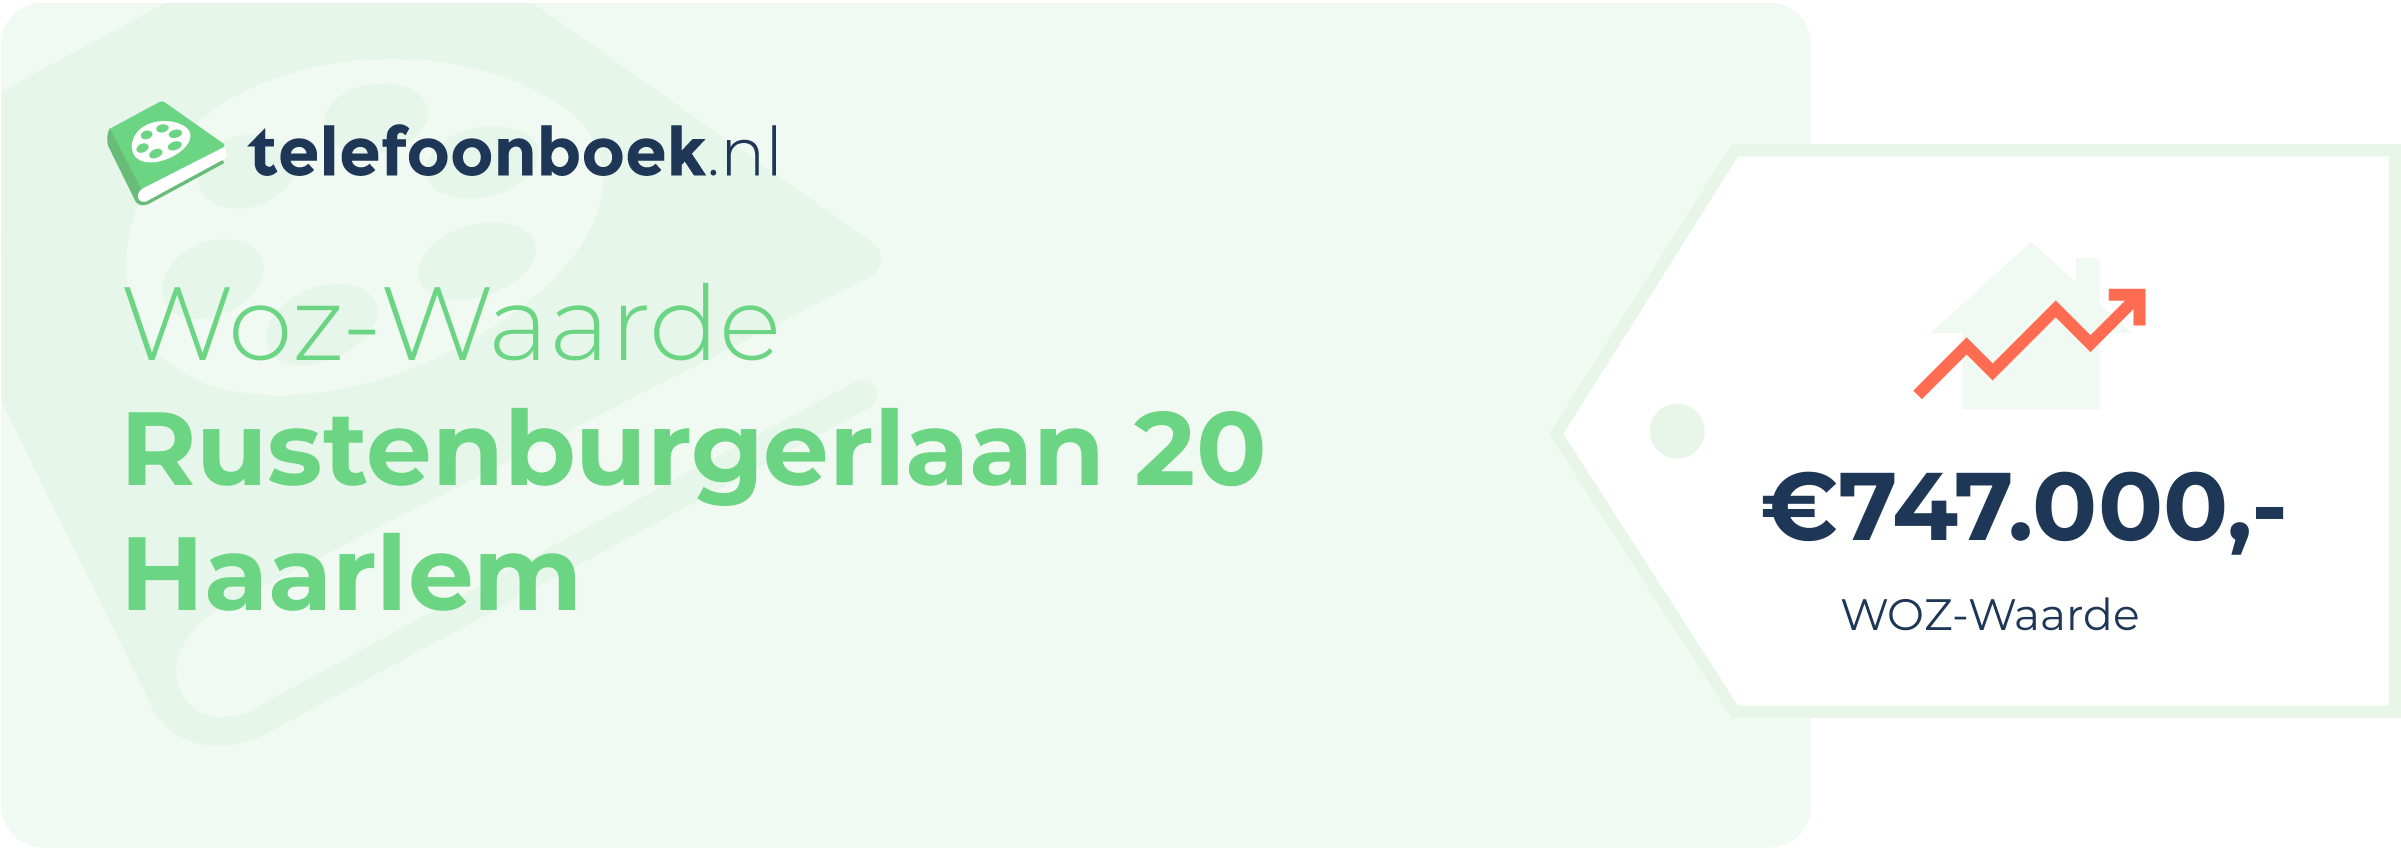 WOZ-waarde Rustenburgerlaan 20 Haarlem